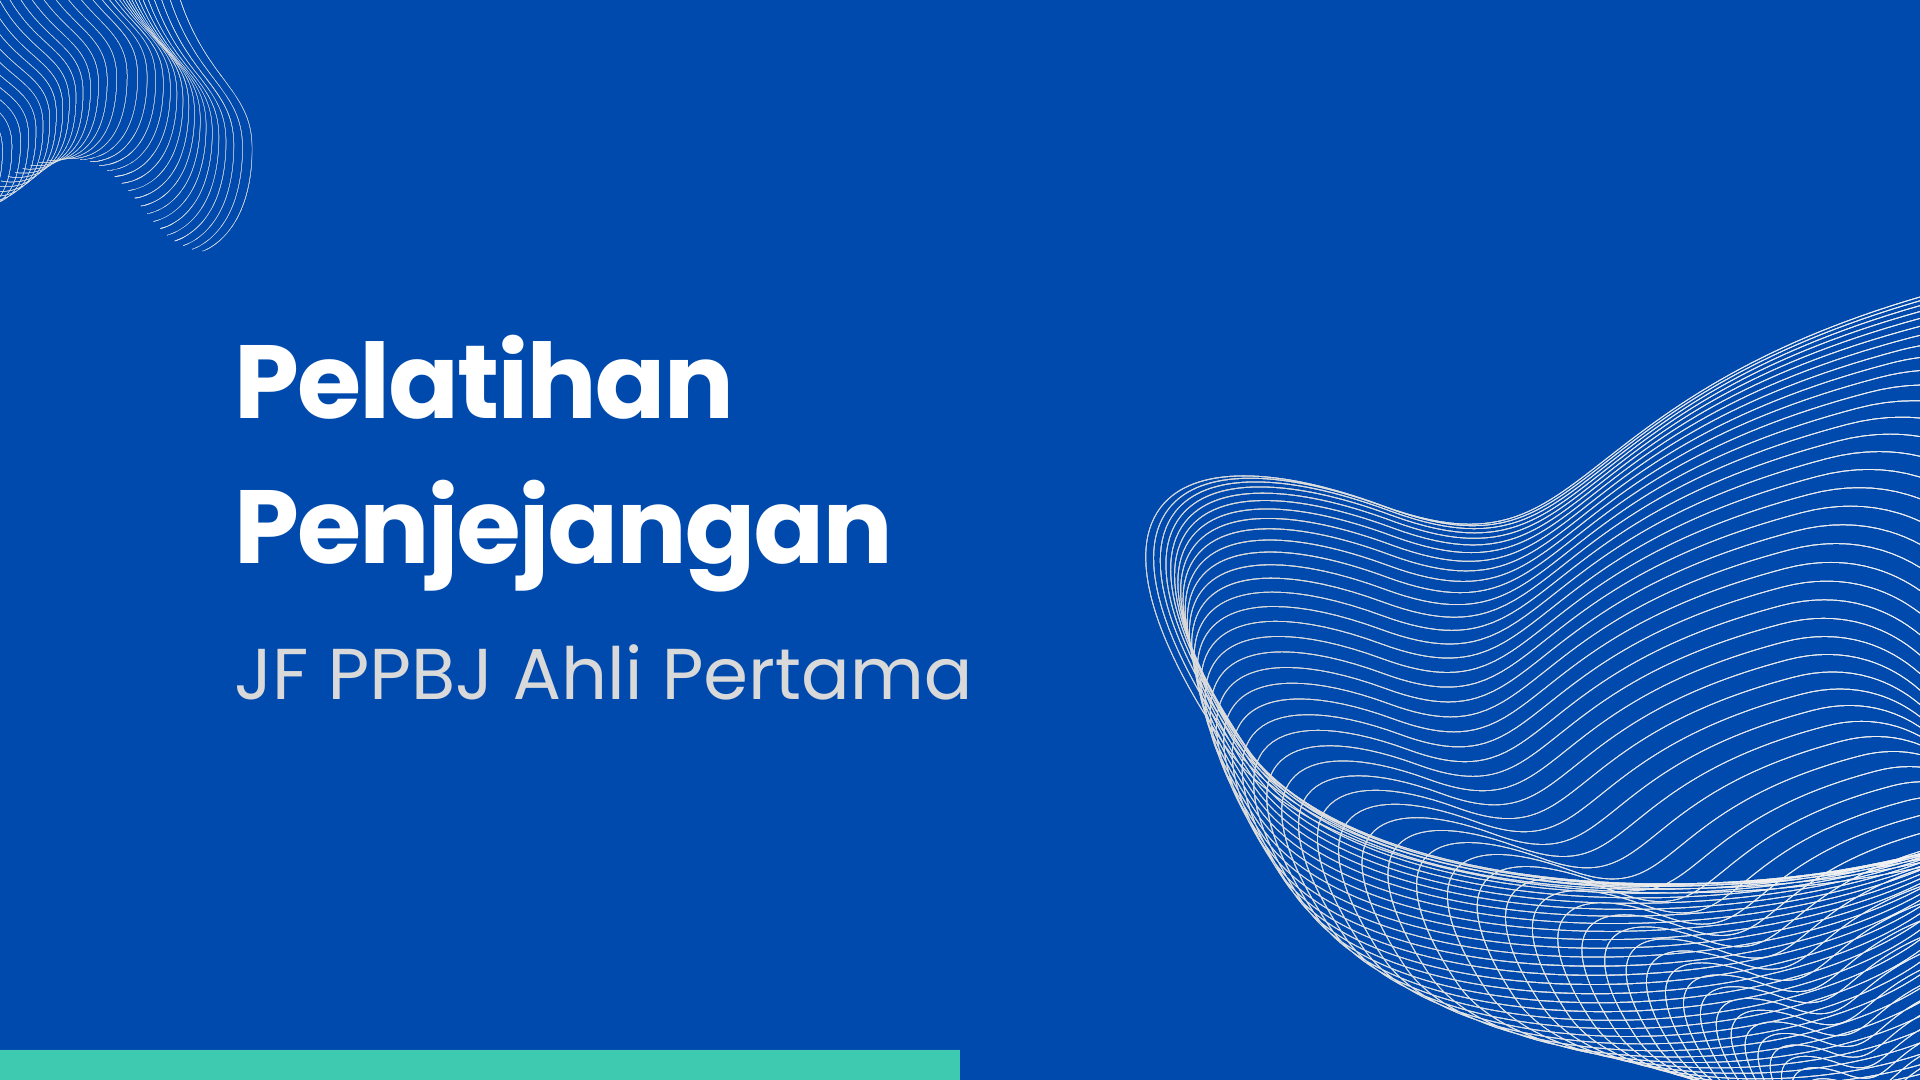 23/07/24-15/11/24_Pelatihan Penjenjangan JFPPBJ Pertama_PUPR Banjarmasin (2)